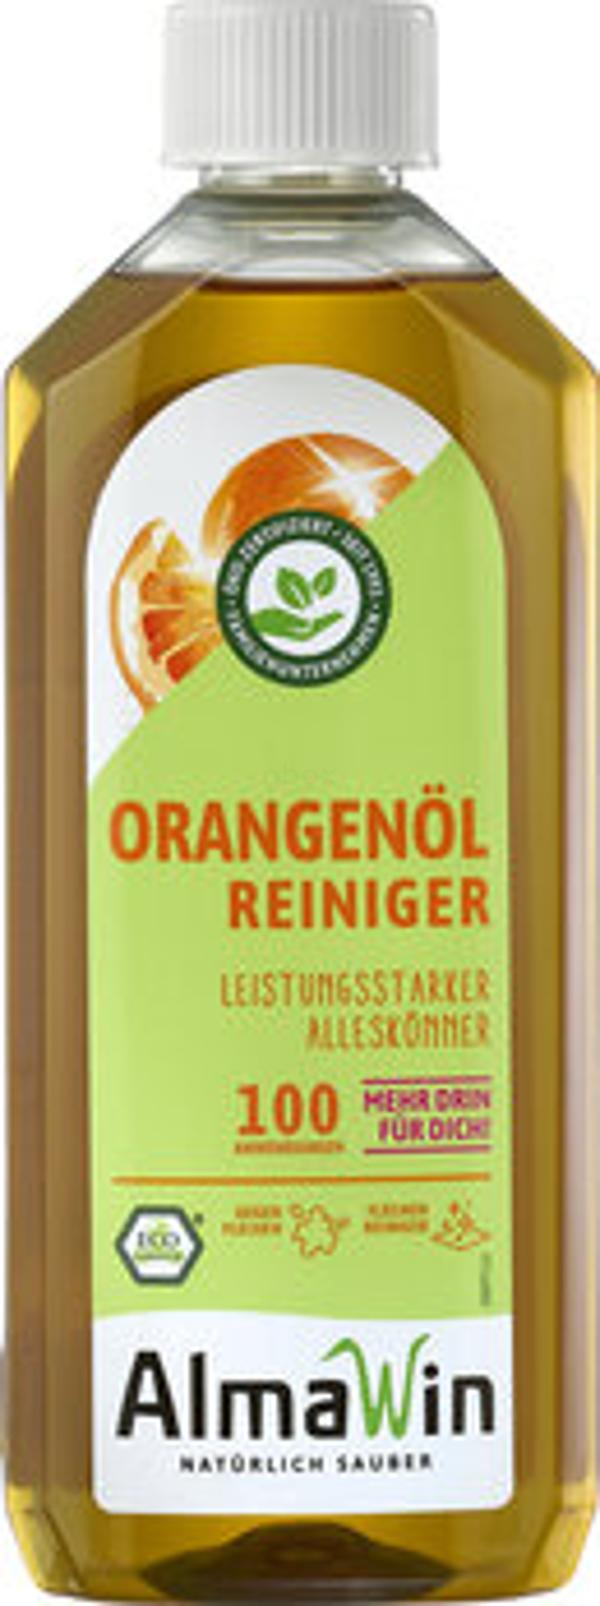 Produktfoto zu Orangenöl-Reiniger